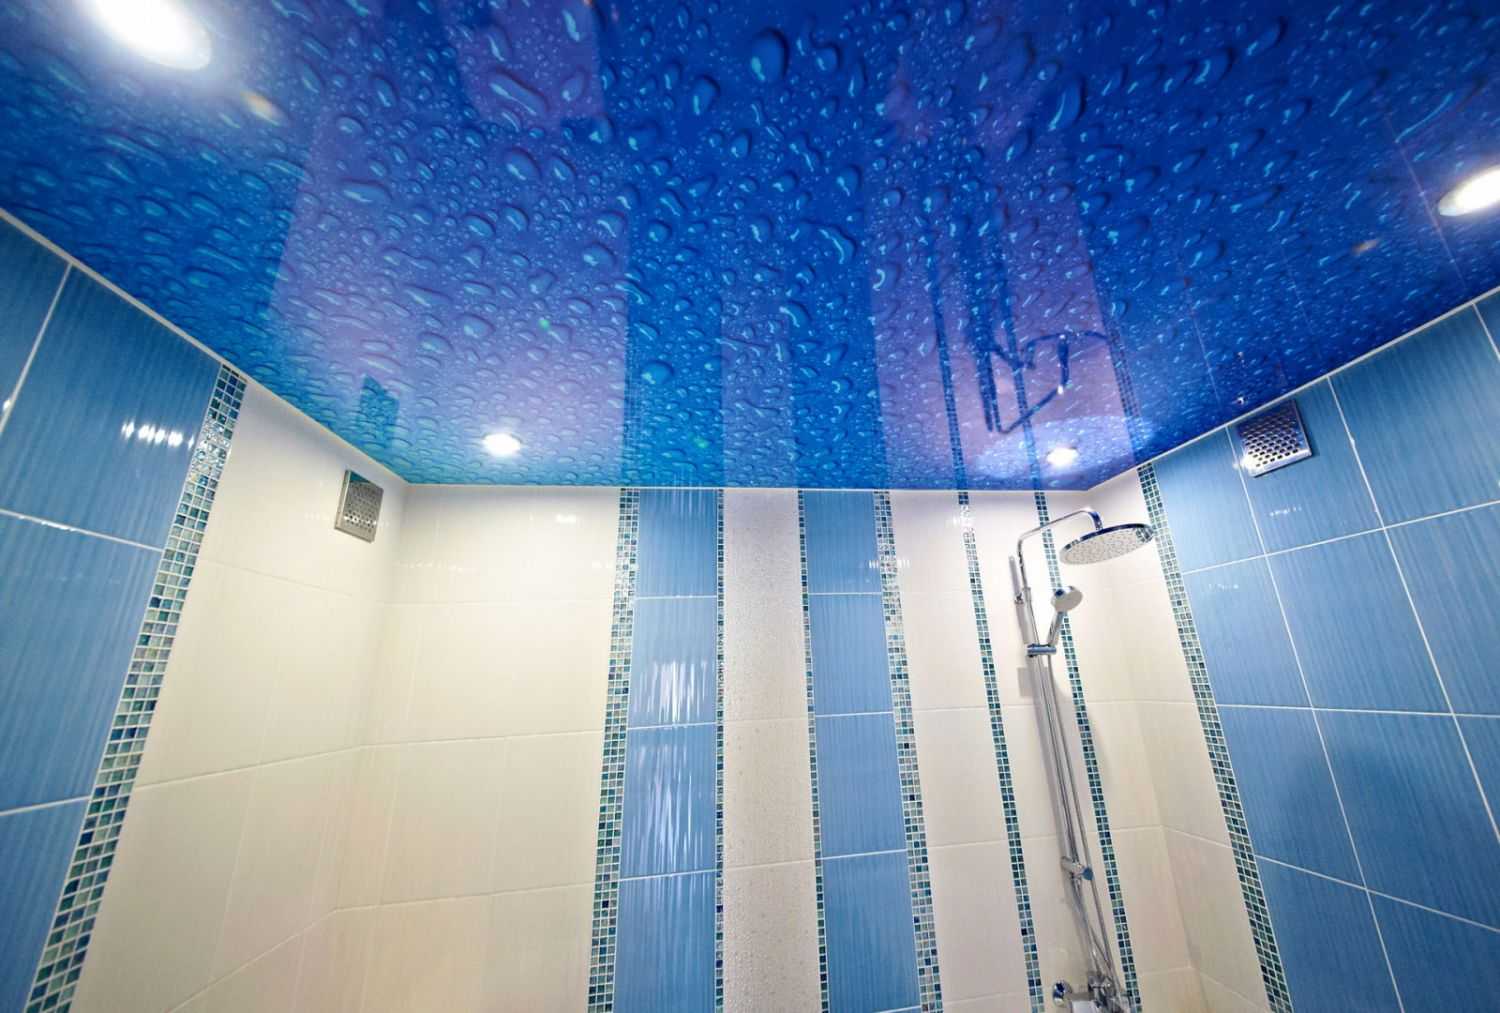 Лучший натяжной потолок в ванной комнате — примеры в интерьерах с лучшим дизайном, подберите интересную идею для себя на фото!